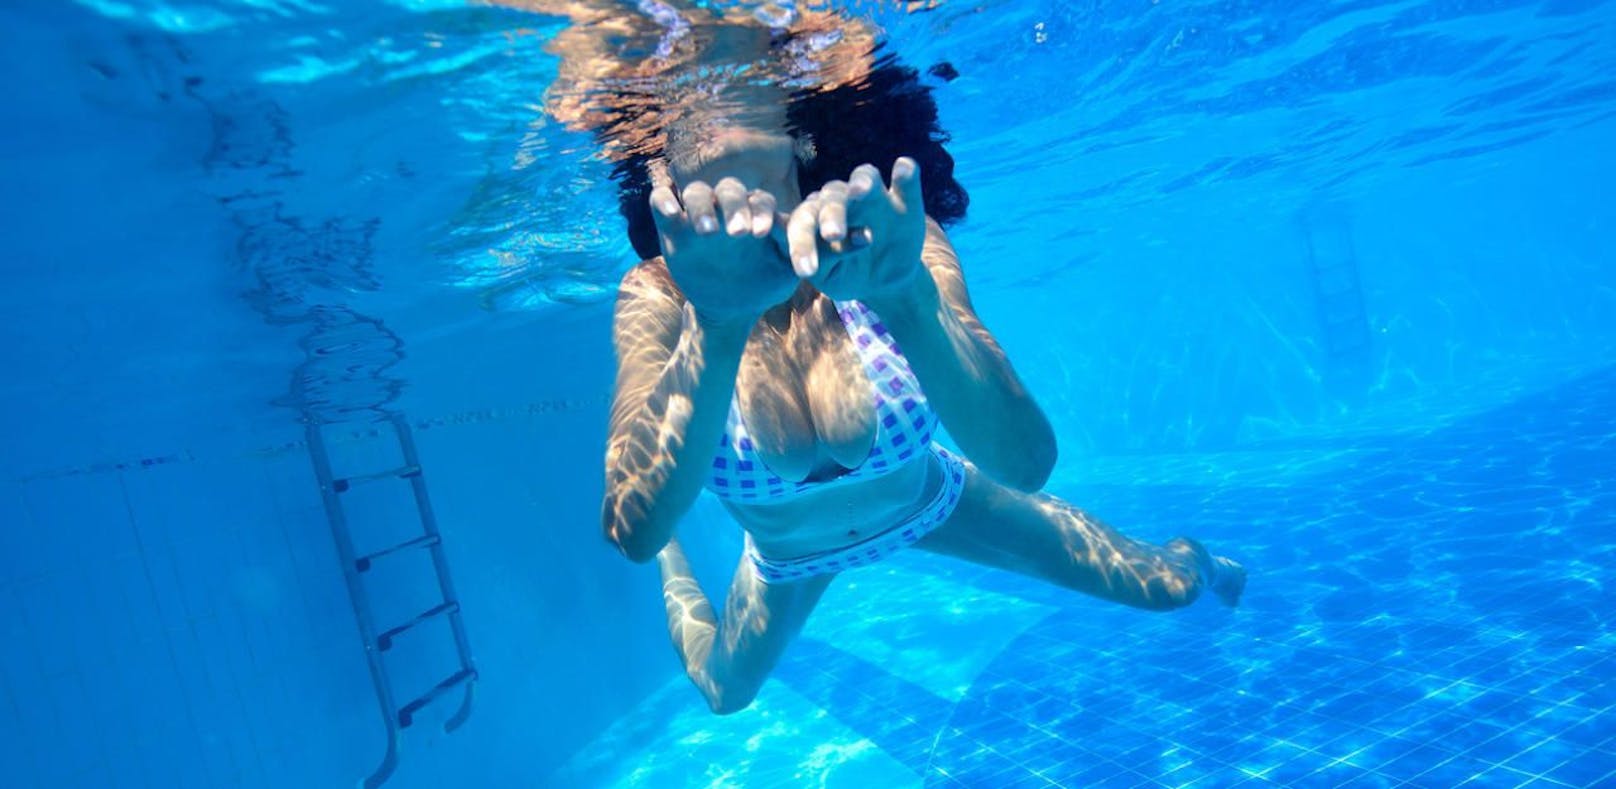 Die Frauen wurden unter Wasser fotografiert (Symbolbild)